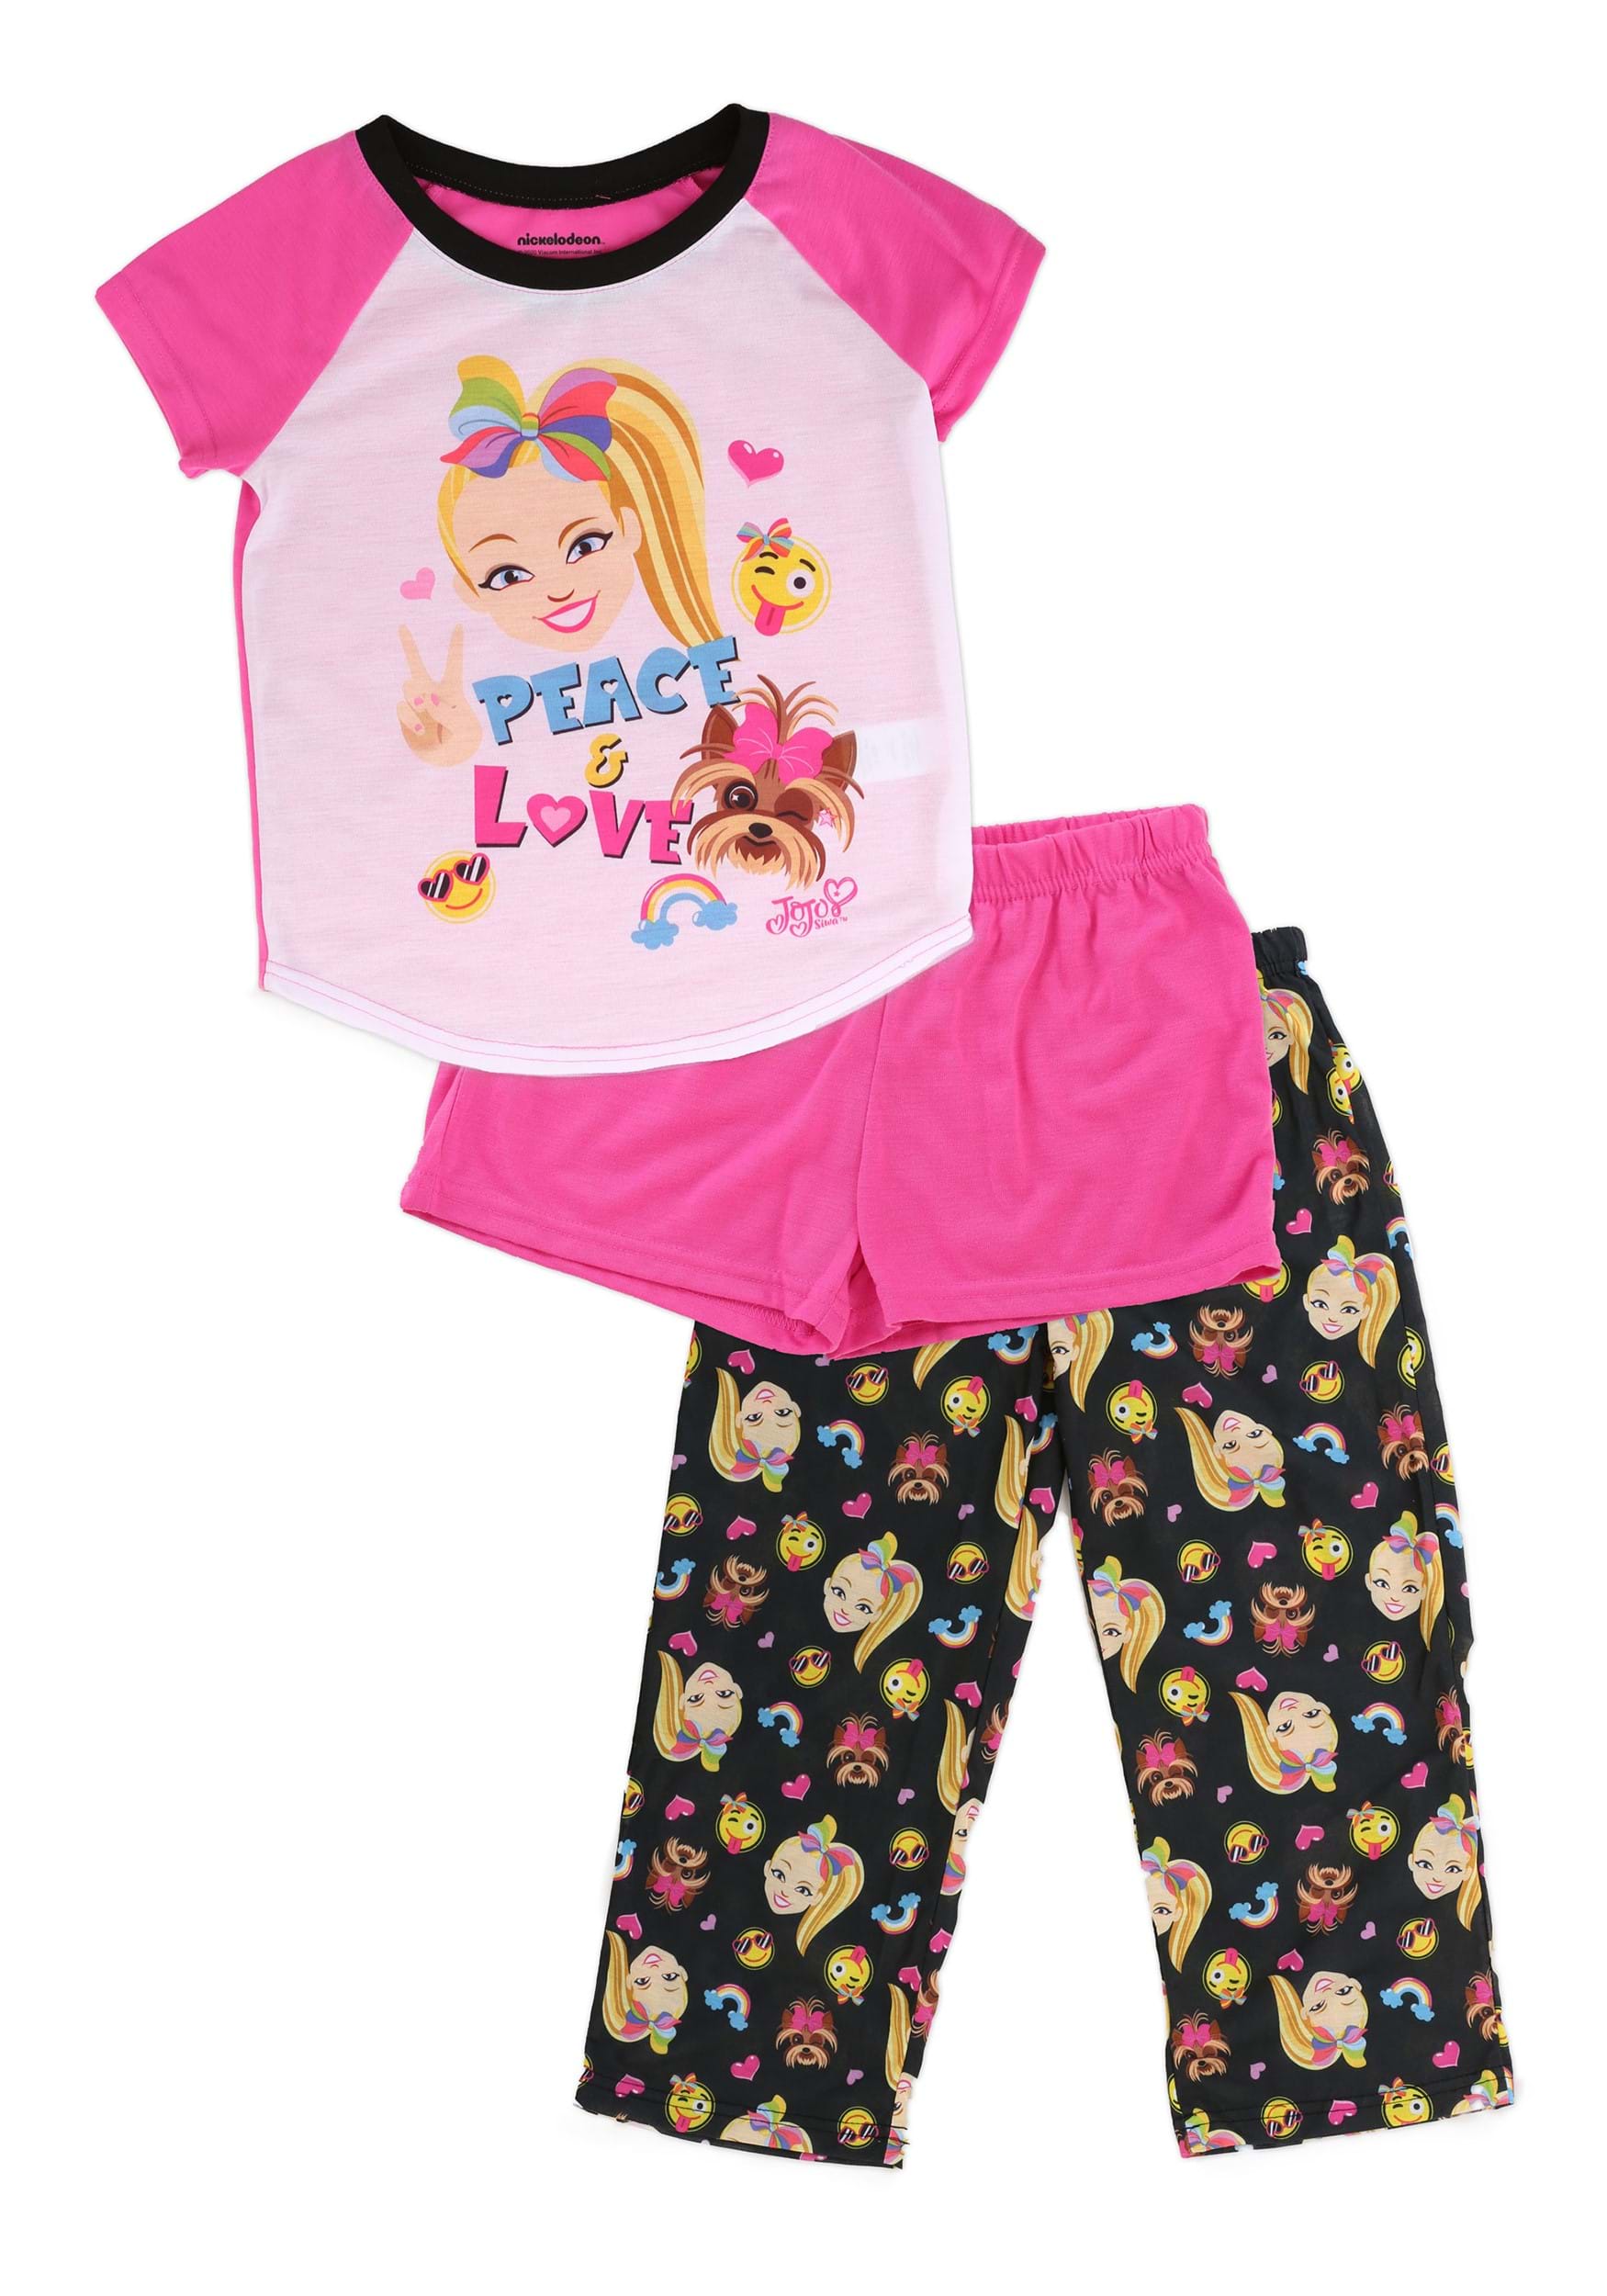 Dorm Pajama Girls sizes JoJo Siwa Long Girls Pajama Set with Slippers